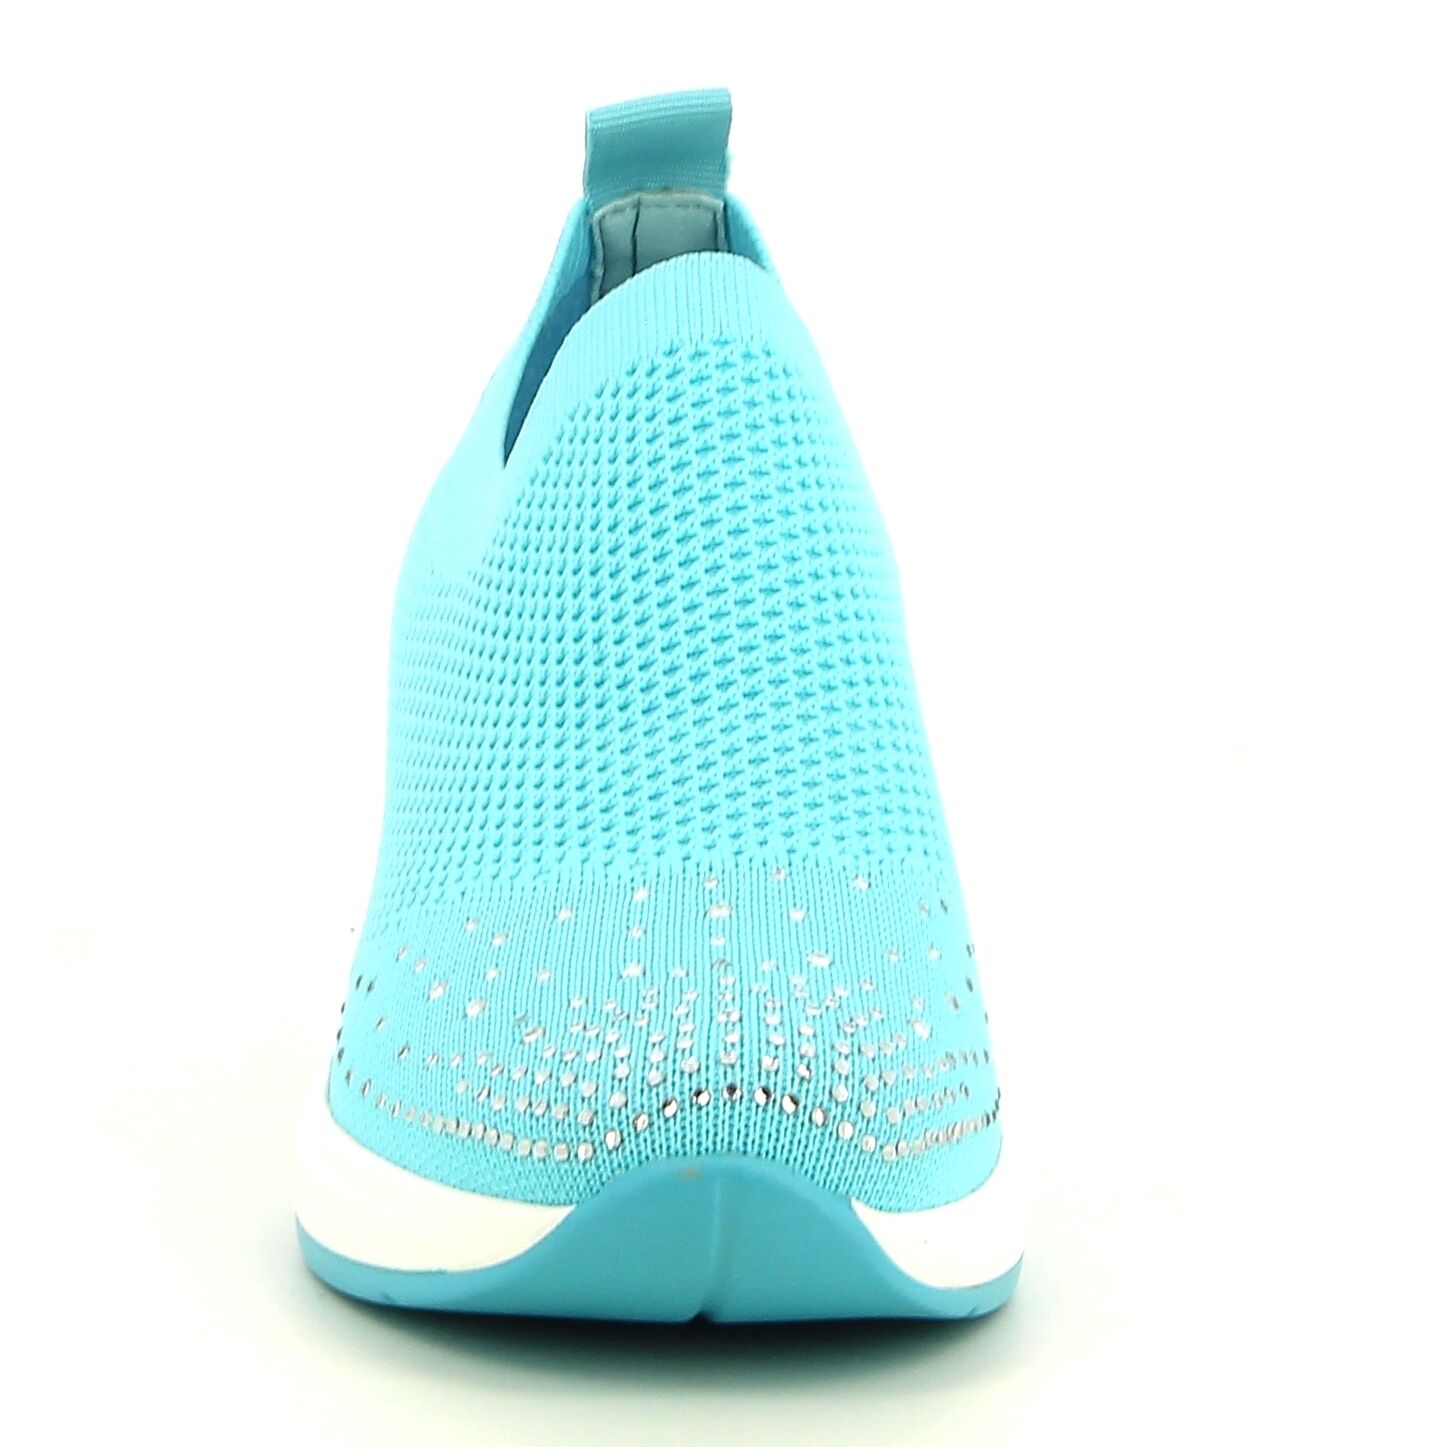 Ken Shoe Fashion - Licht Blauw - Instappers